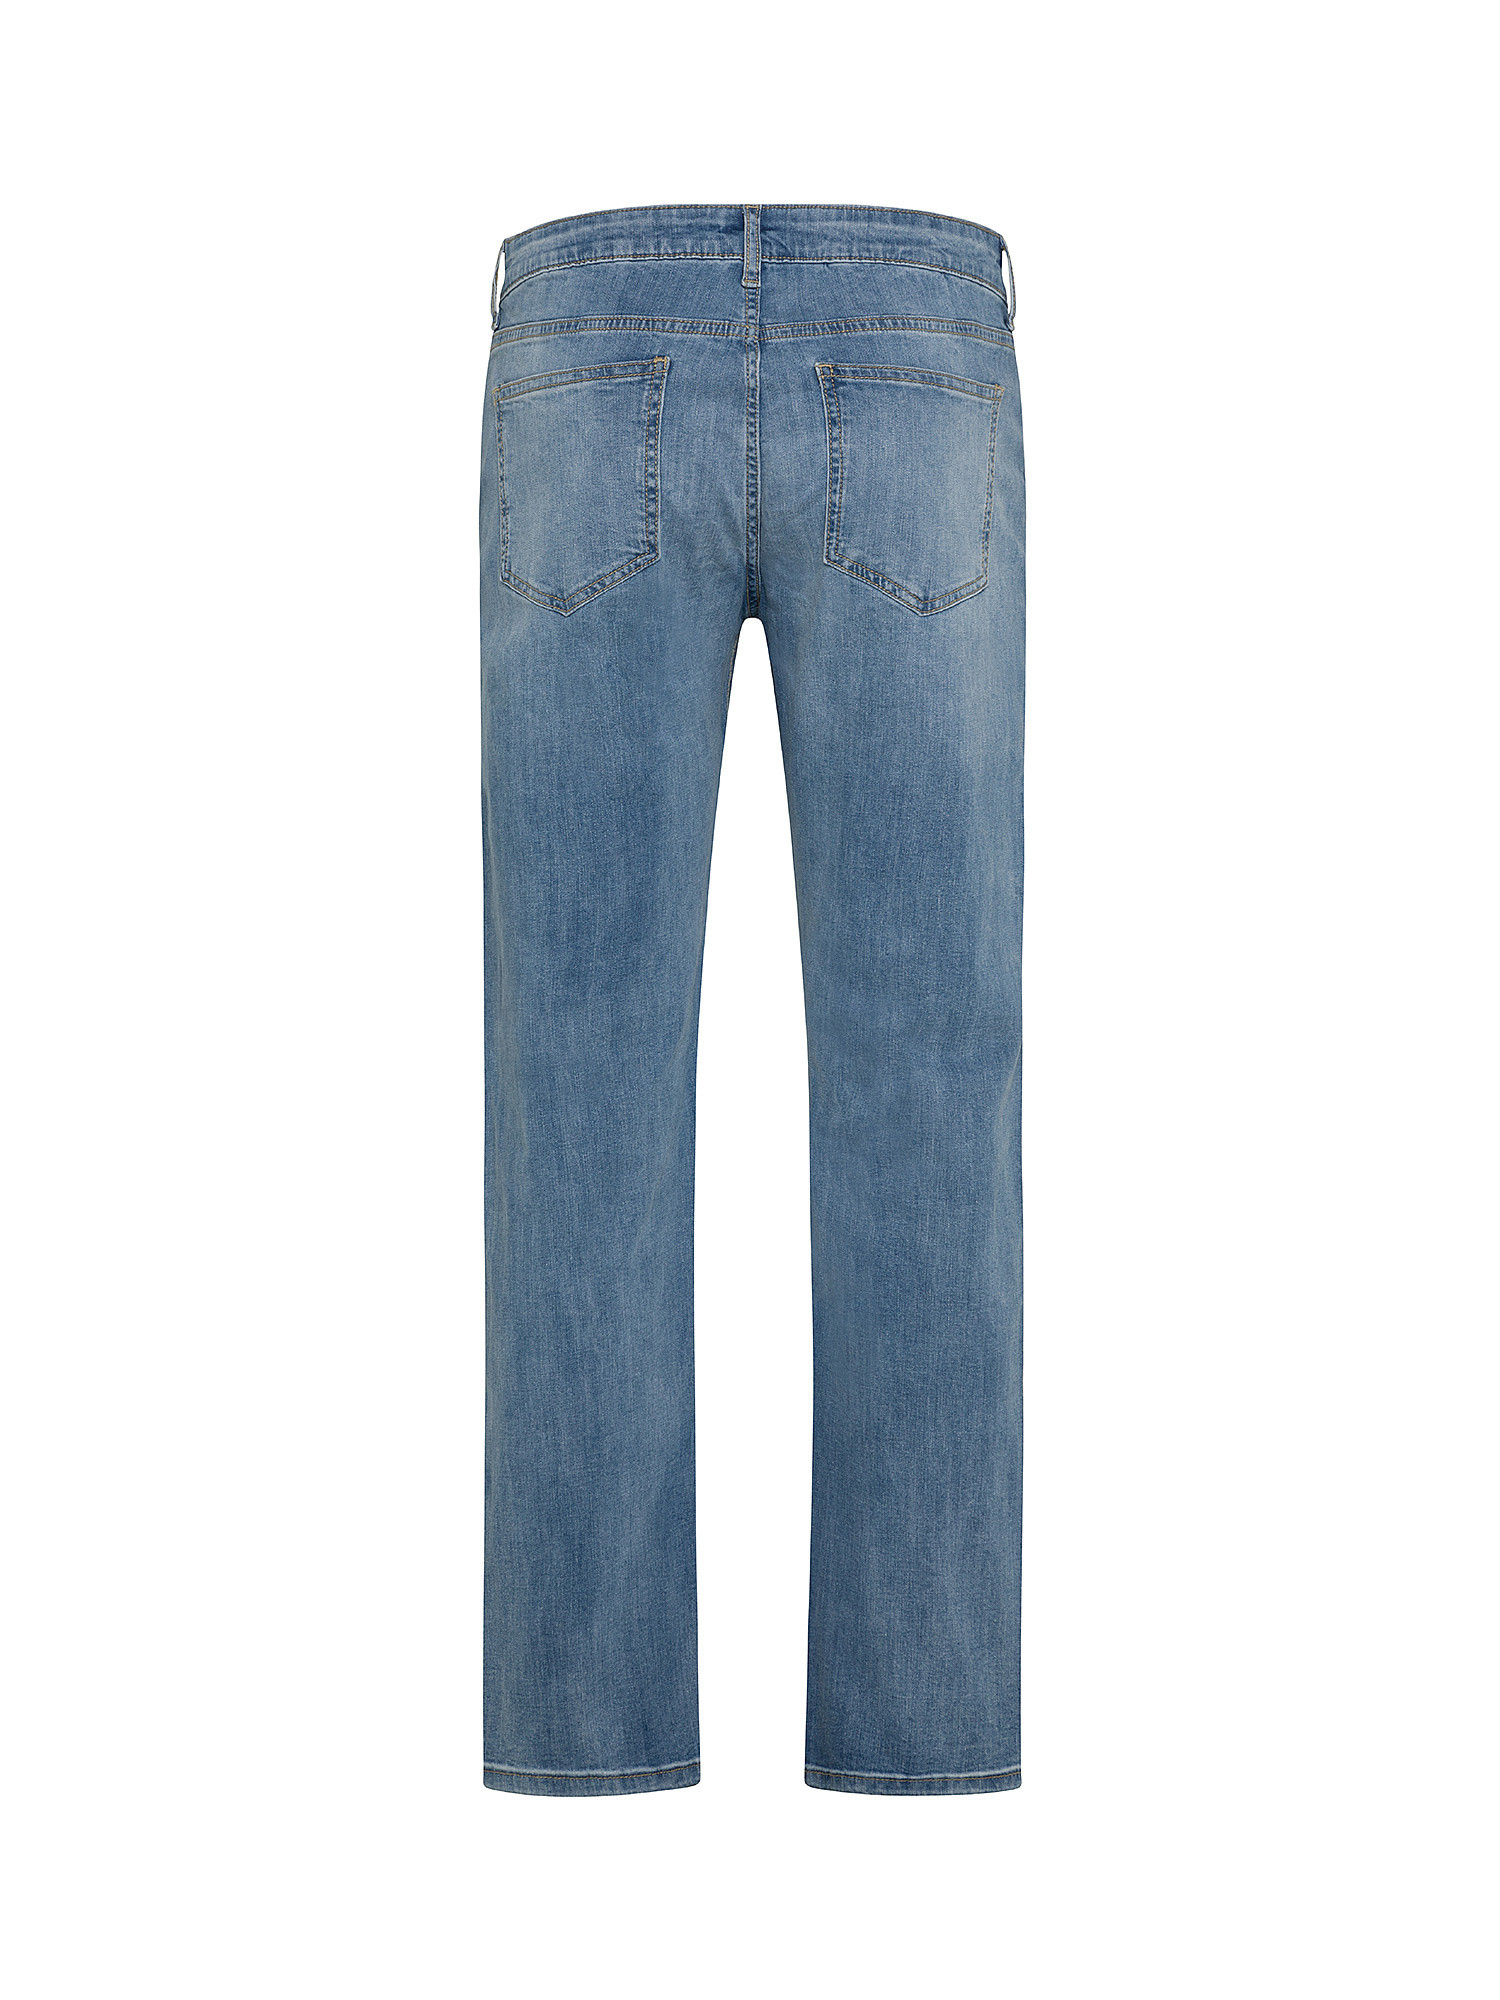 JCT - Five pocket jeans, Blue, large image number 1